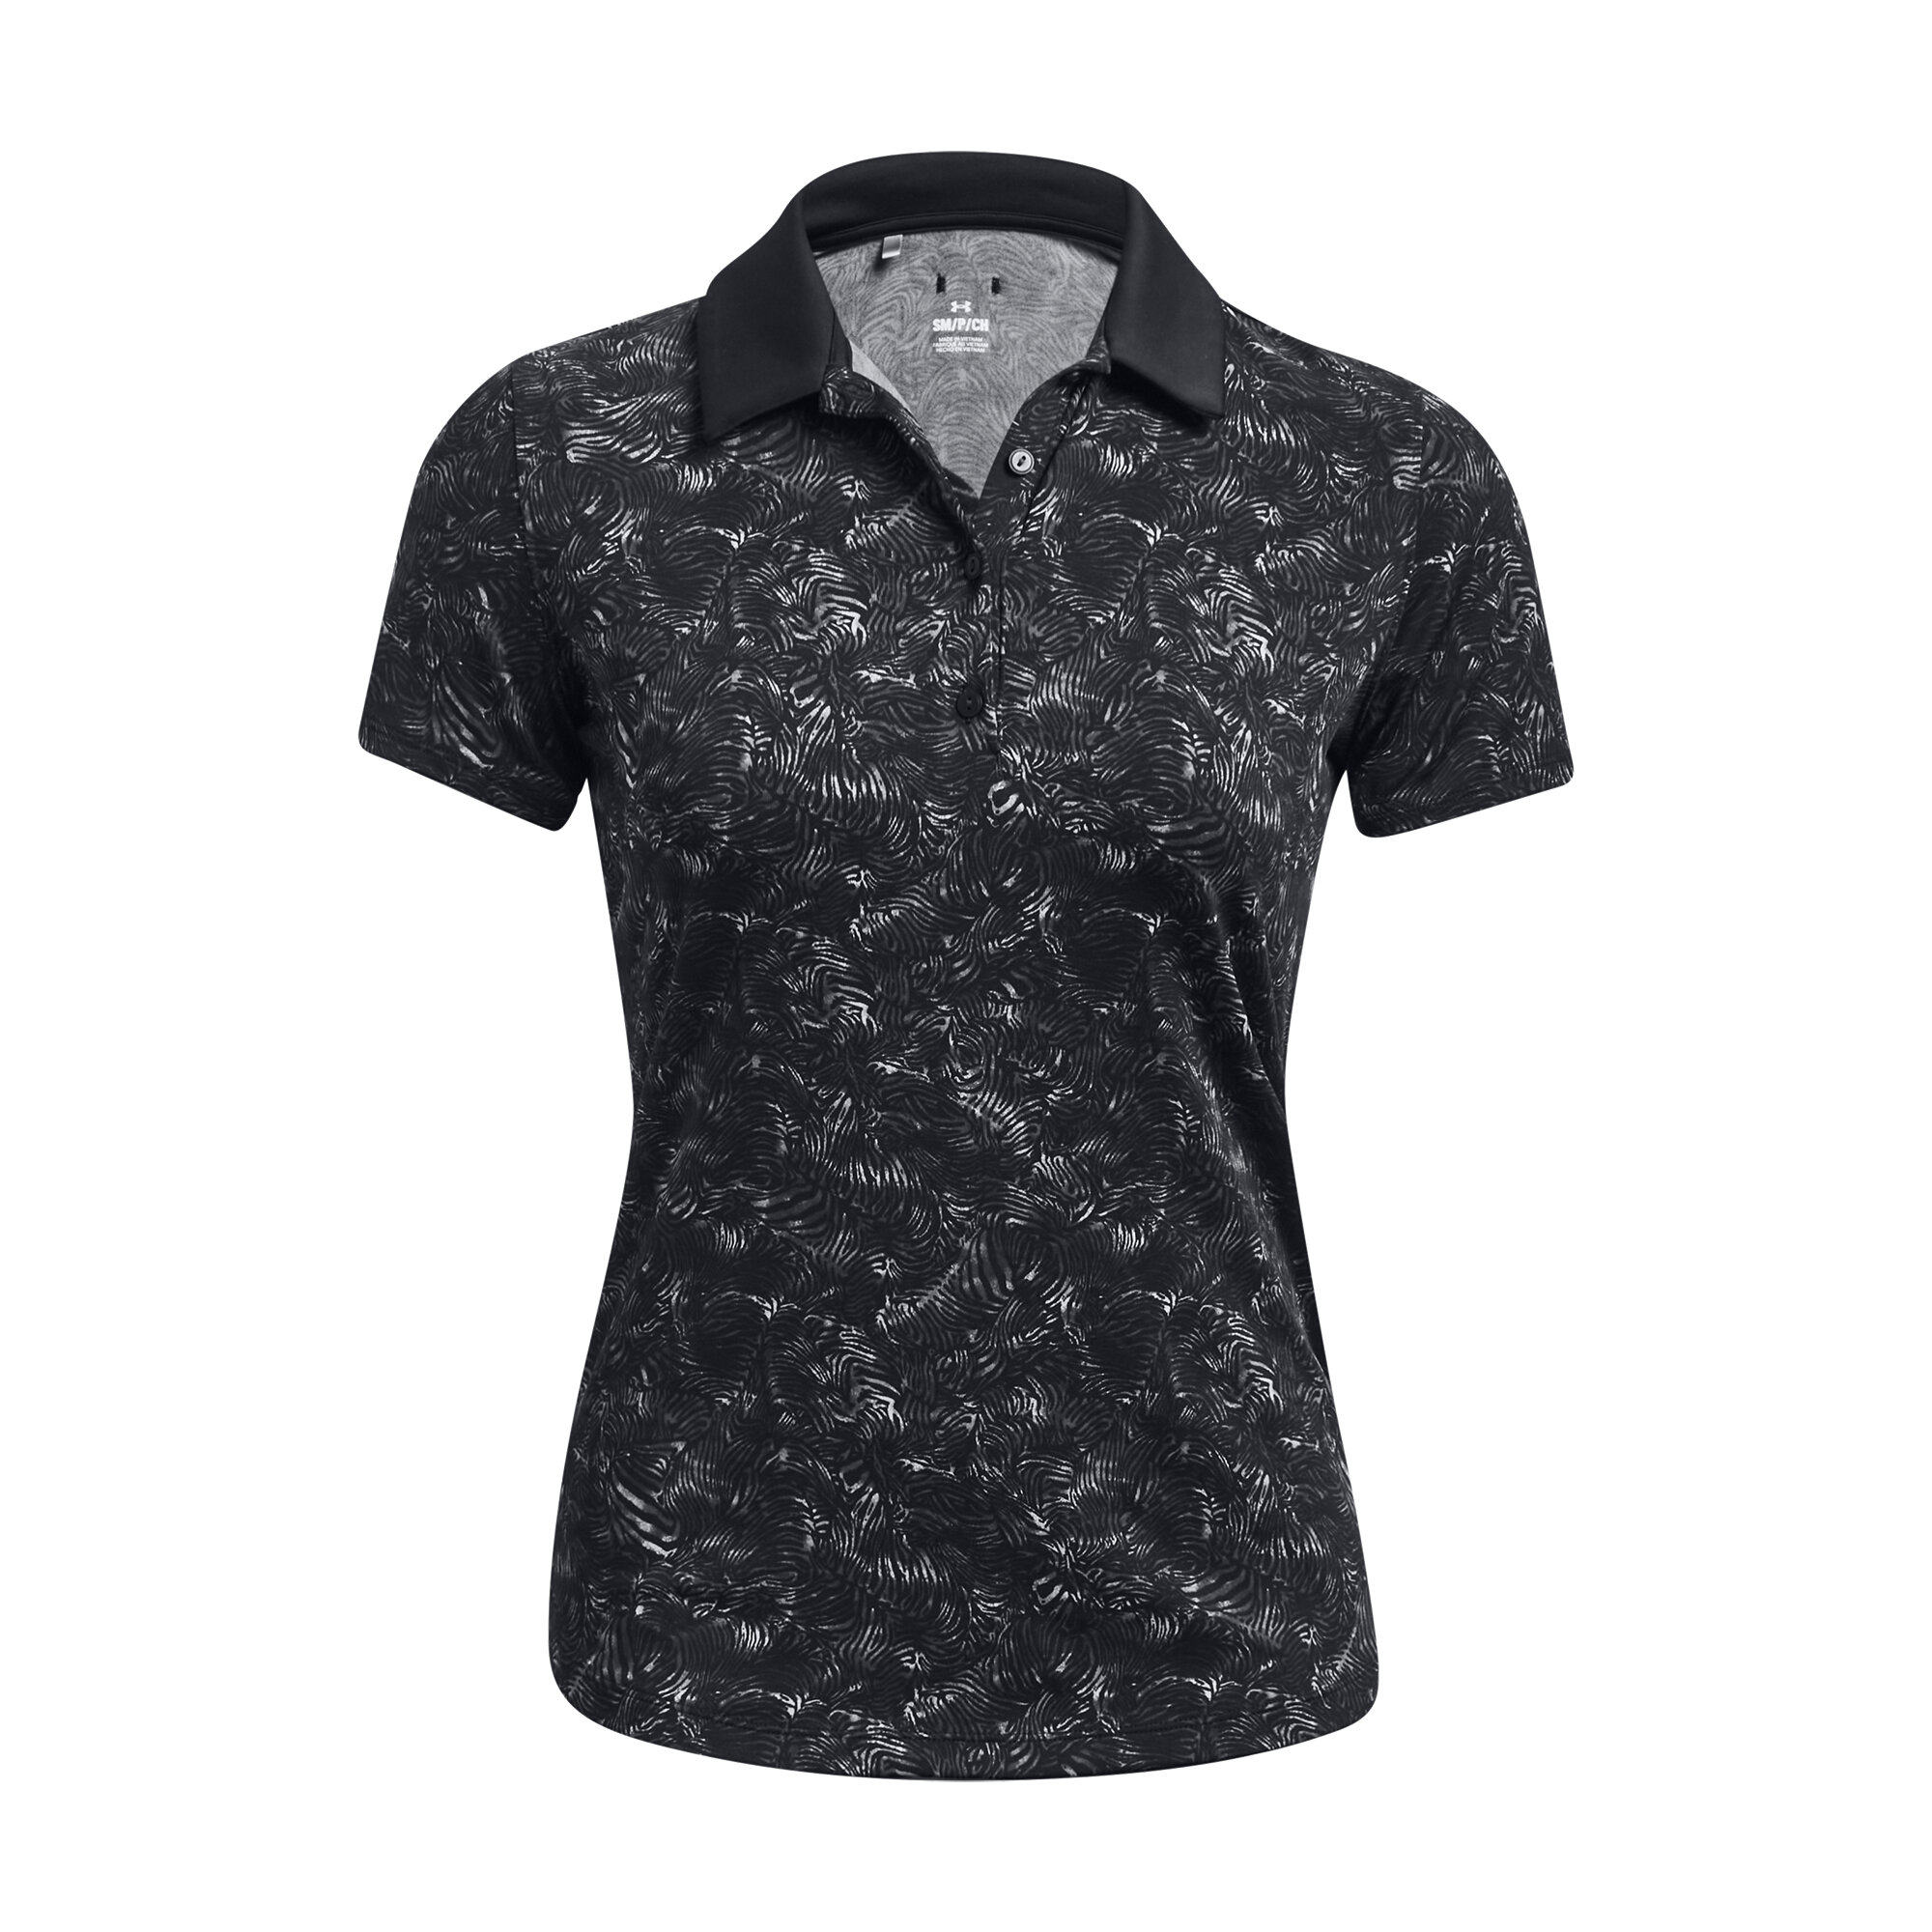 Under Armour Playoff Printed SS dámské golfové triko, černé, vel. M